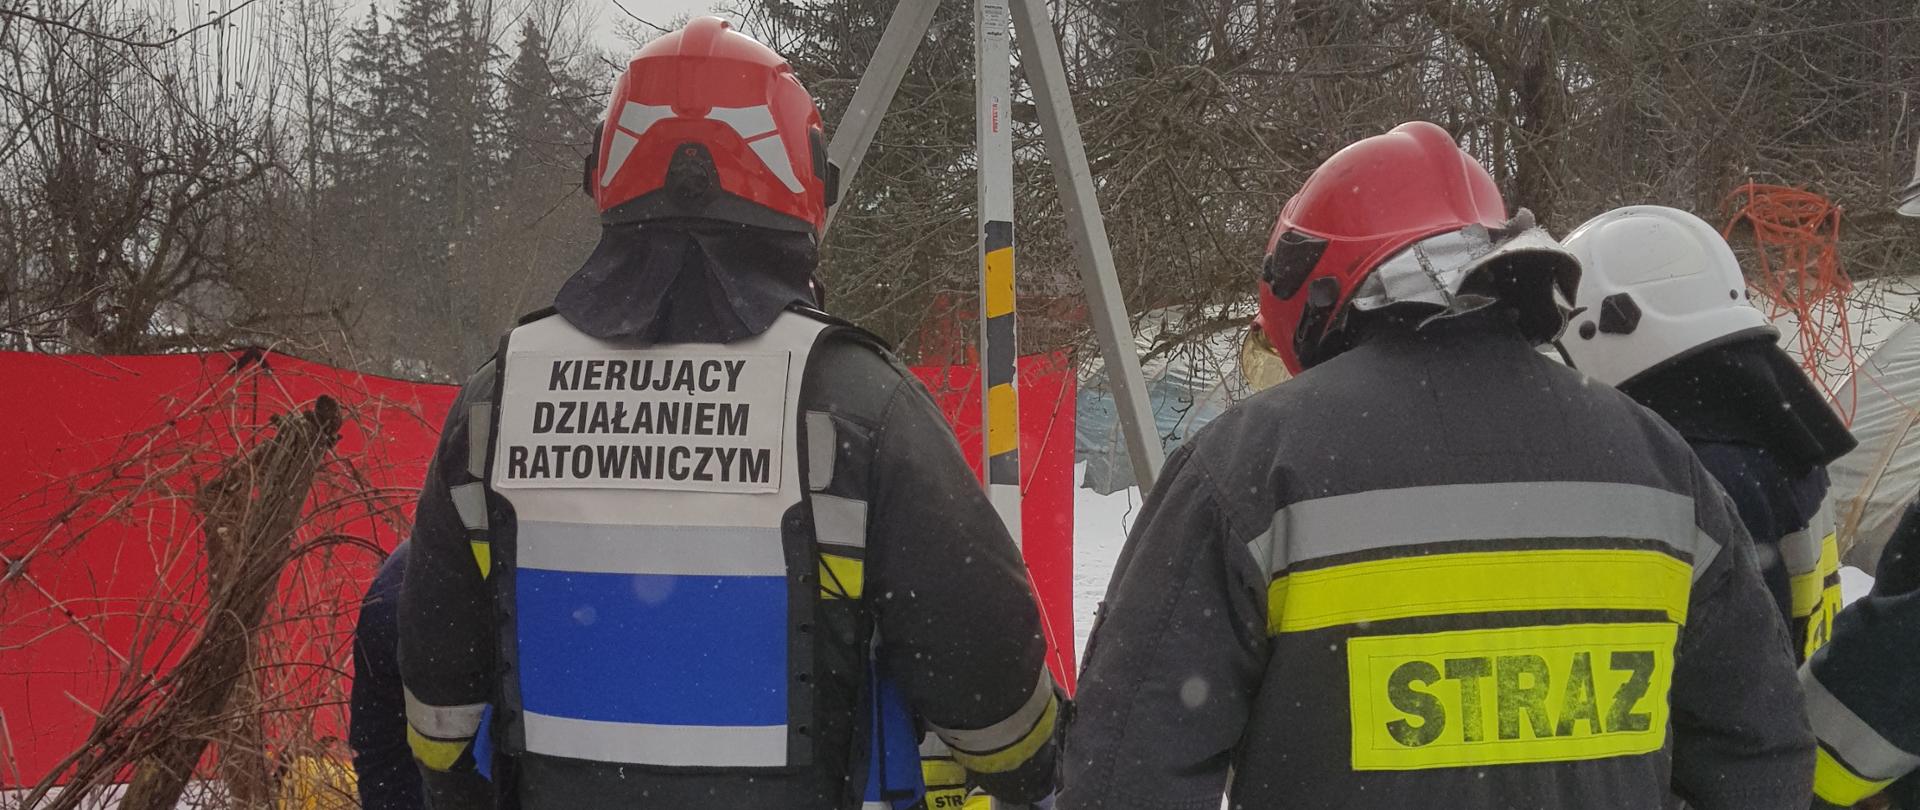 Grupa strażaków rozstawia trójnóg ratowniczy, który wykorzystany będzie do zejścia do studni.